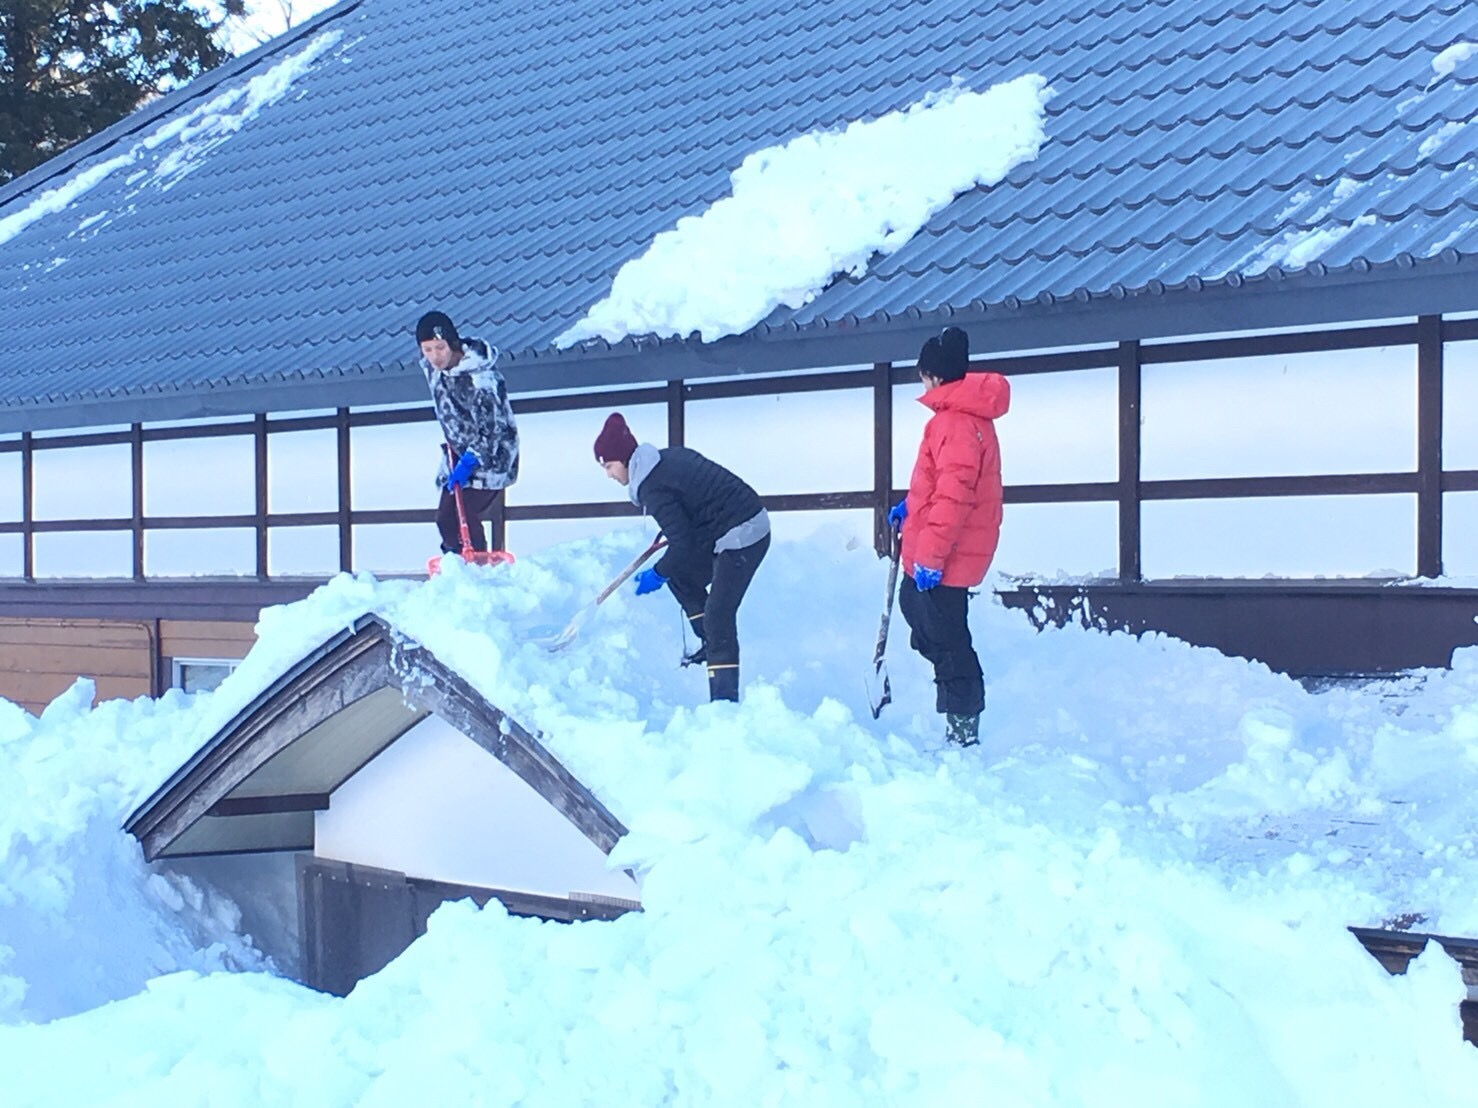 地上と屋根の雪が繋がるとヤバイ 屋根の雪下ろしは複数人で